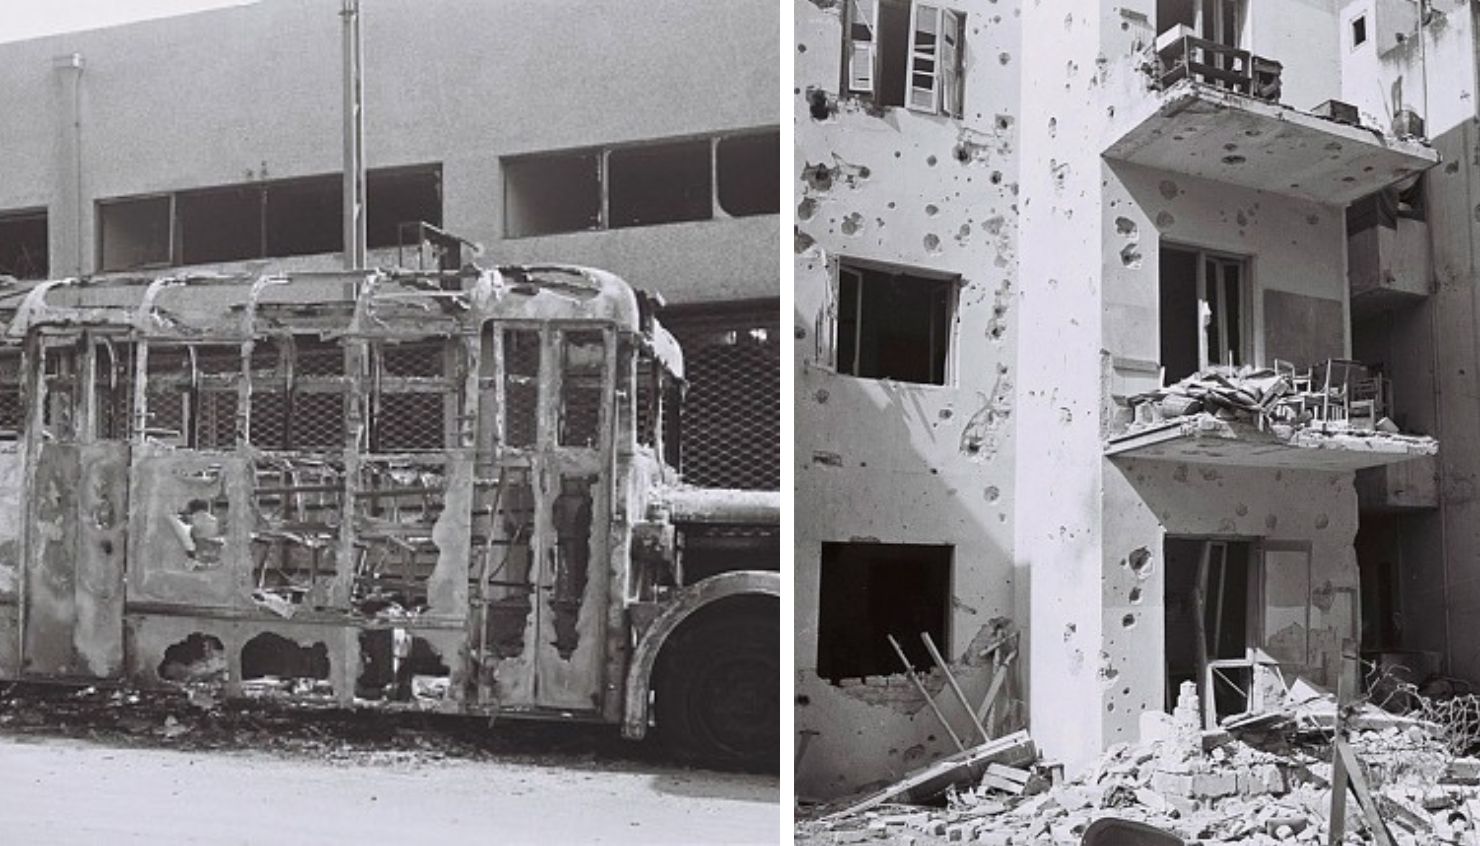 הפצצה של תל אביב מאי 1948 צילום: זולטן קלוגר, לע"מ